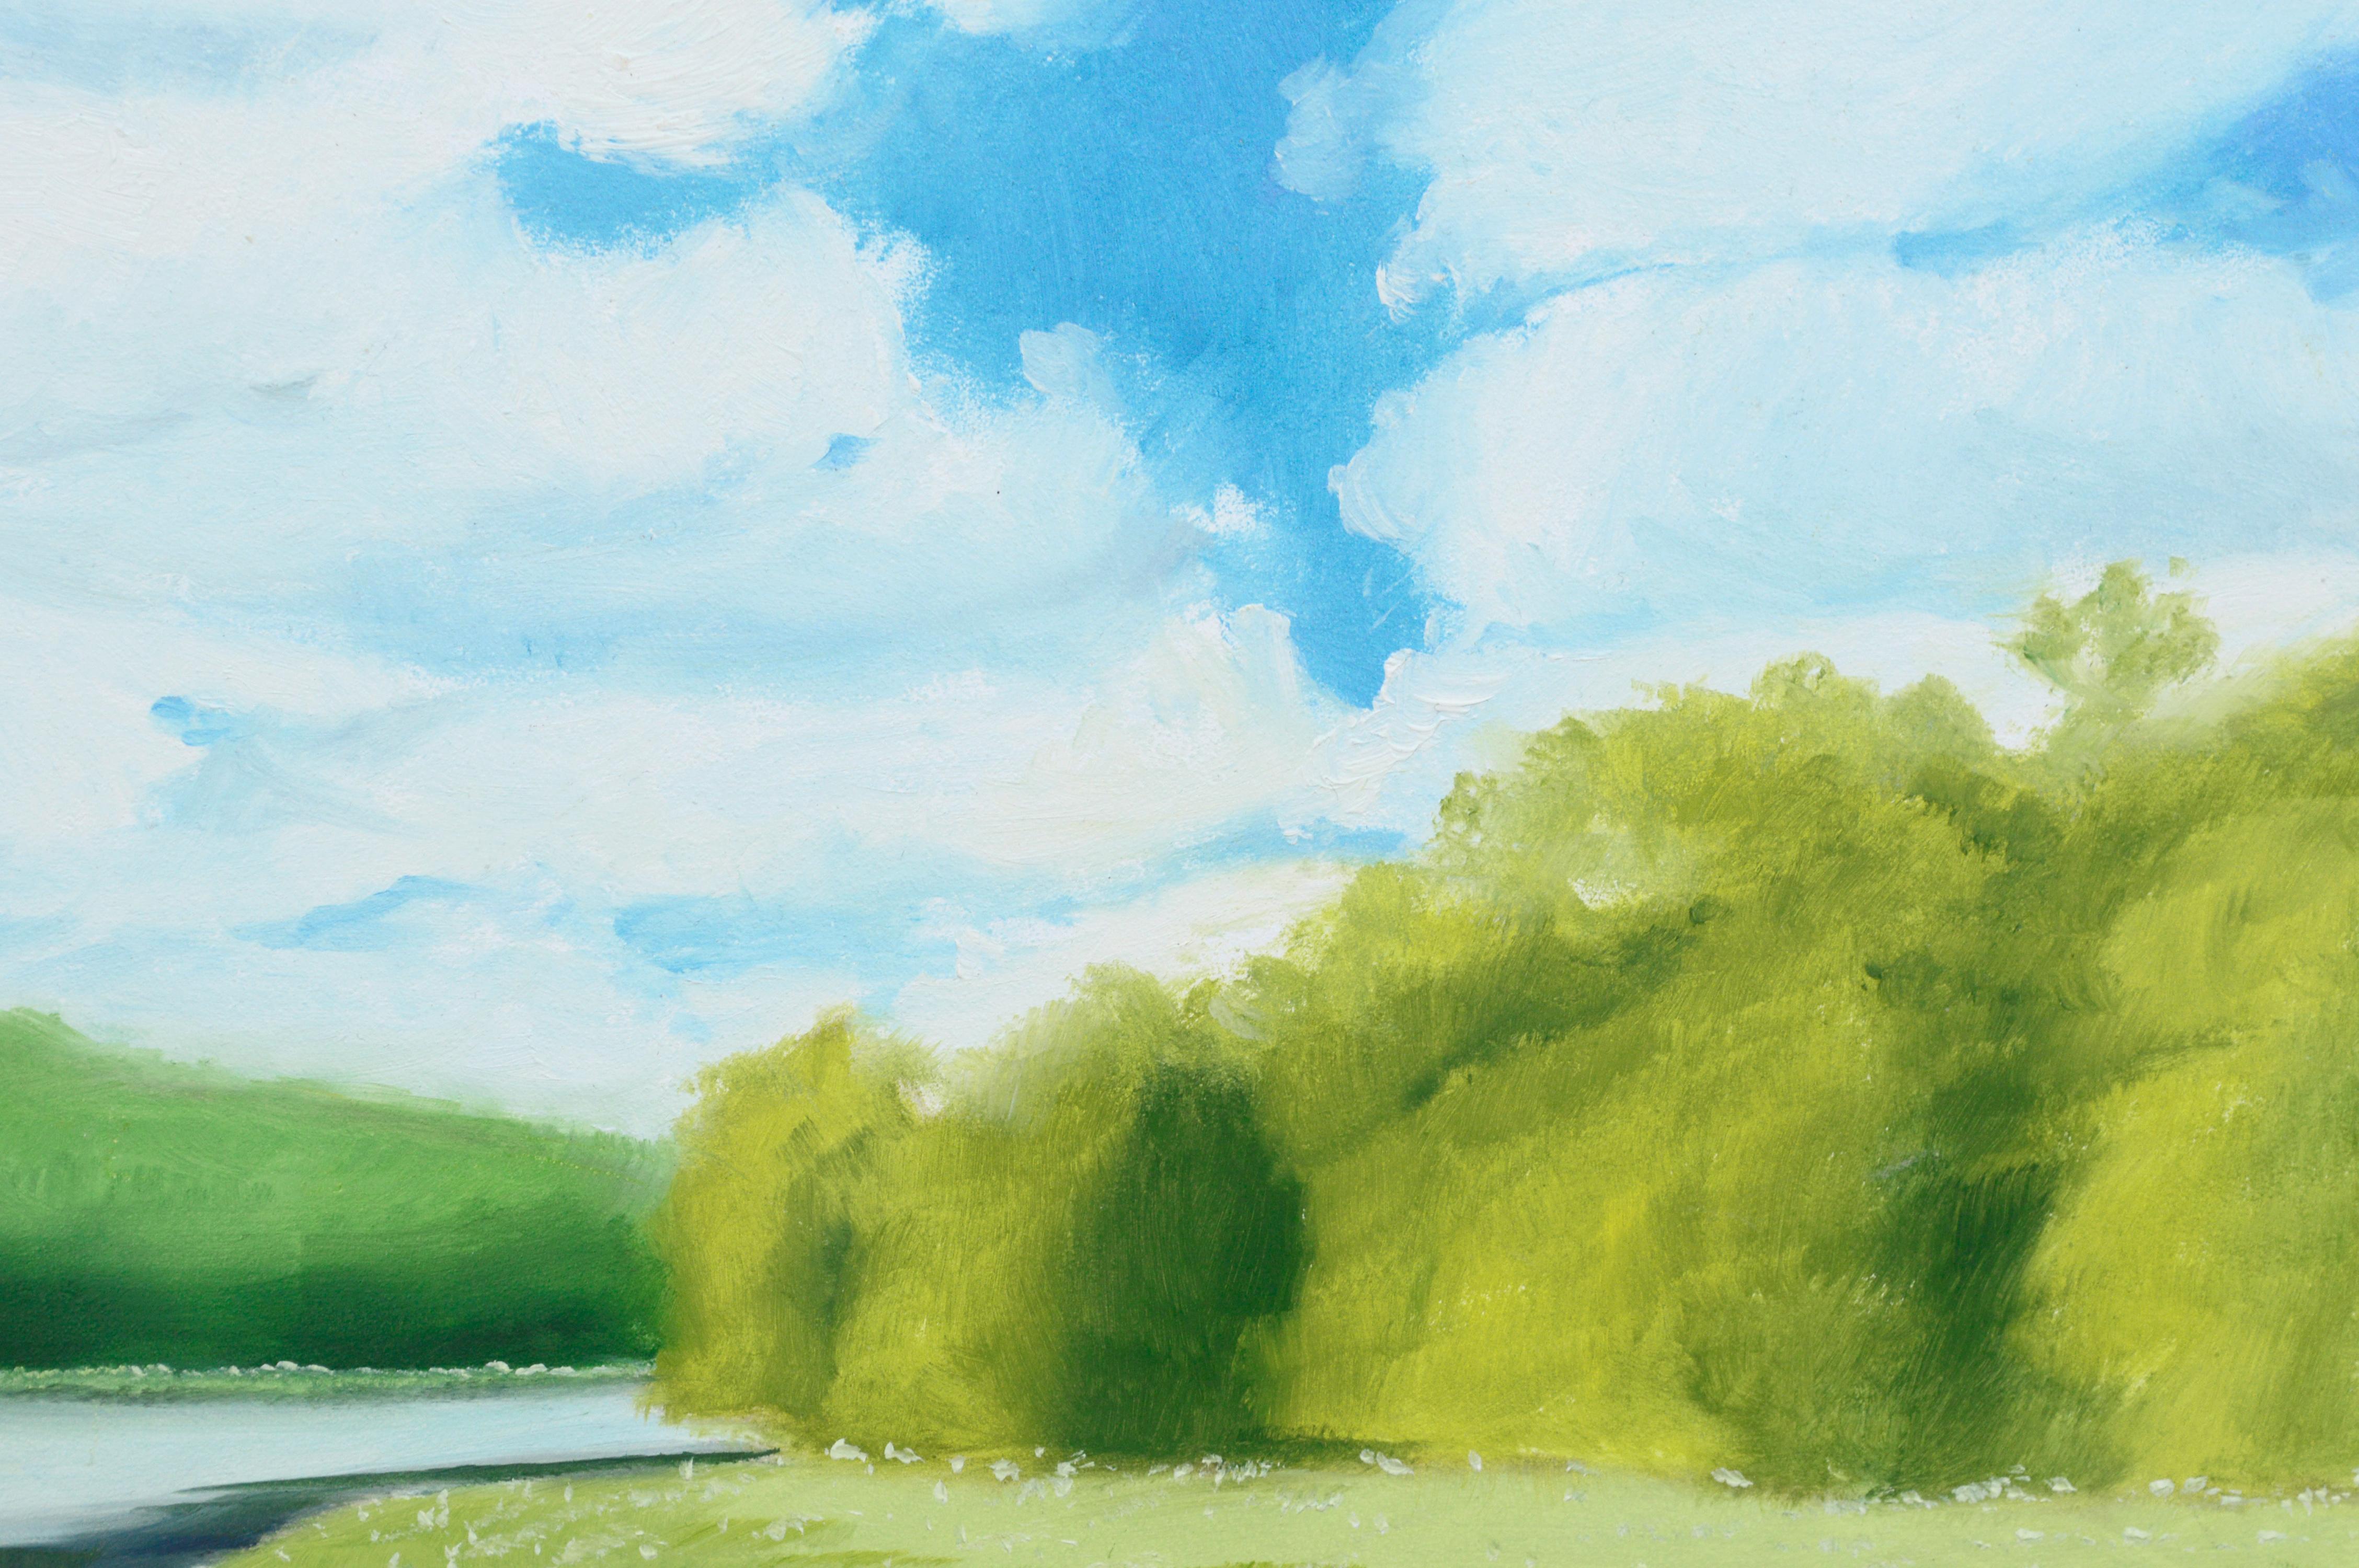 Étang de nénuphar au bord de la forêt - Paysage - Impressionnisme américain Painting par Susan Reinier